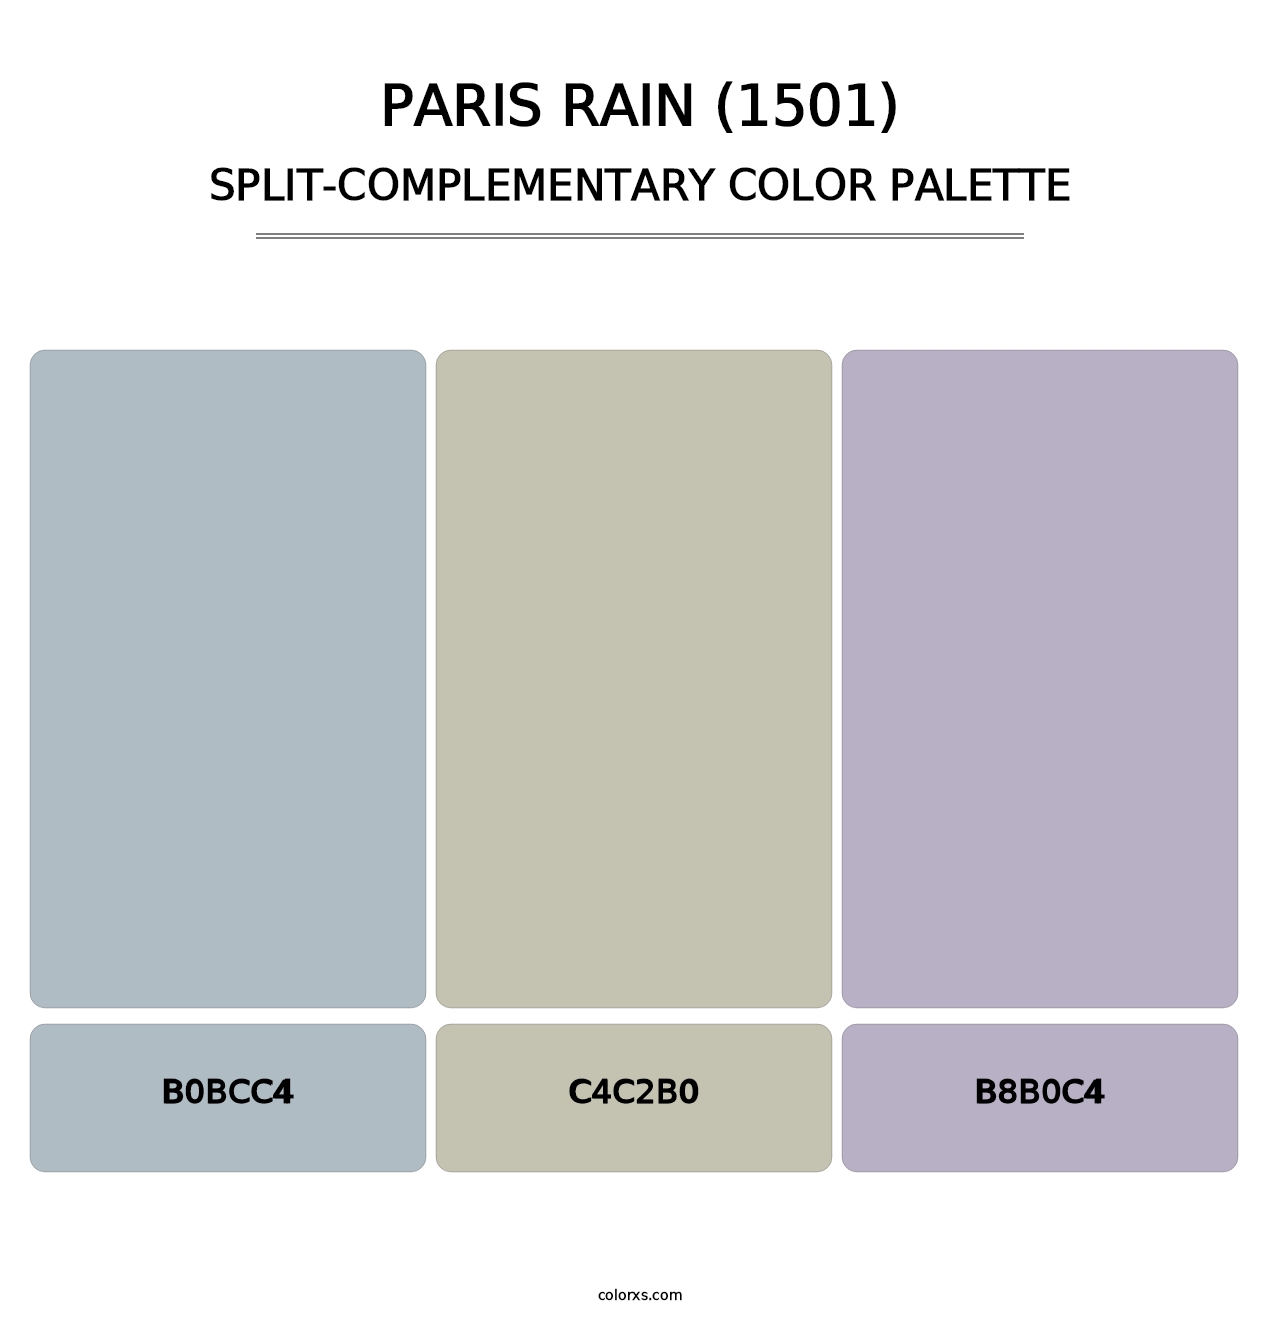 Paris Rain (1501) - Split-Complementary Color Palette